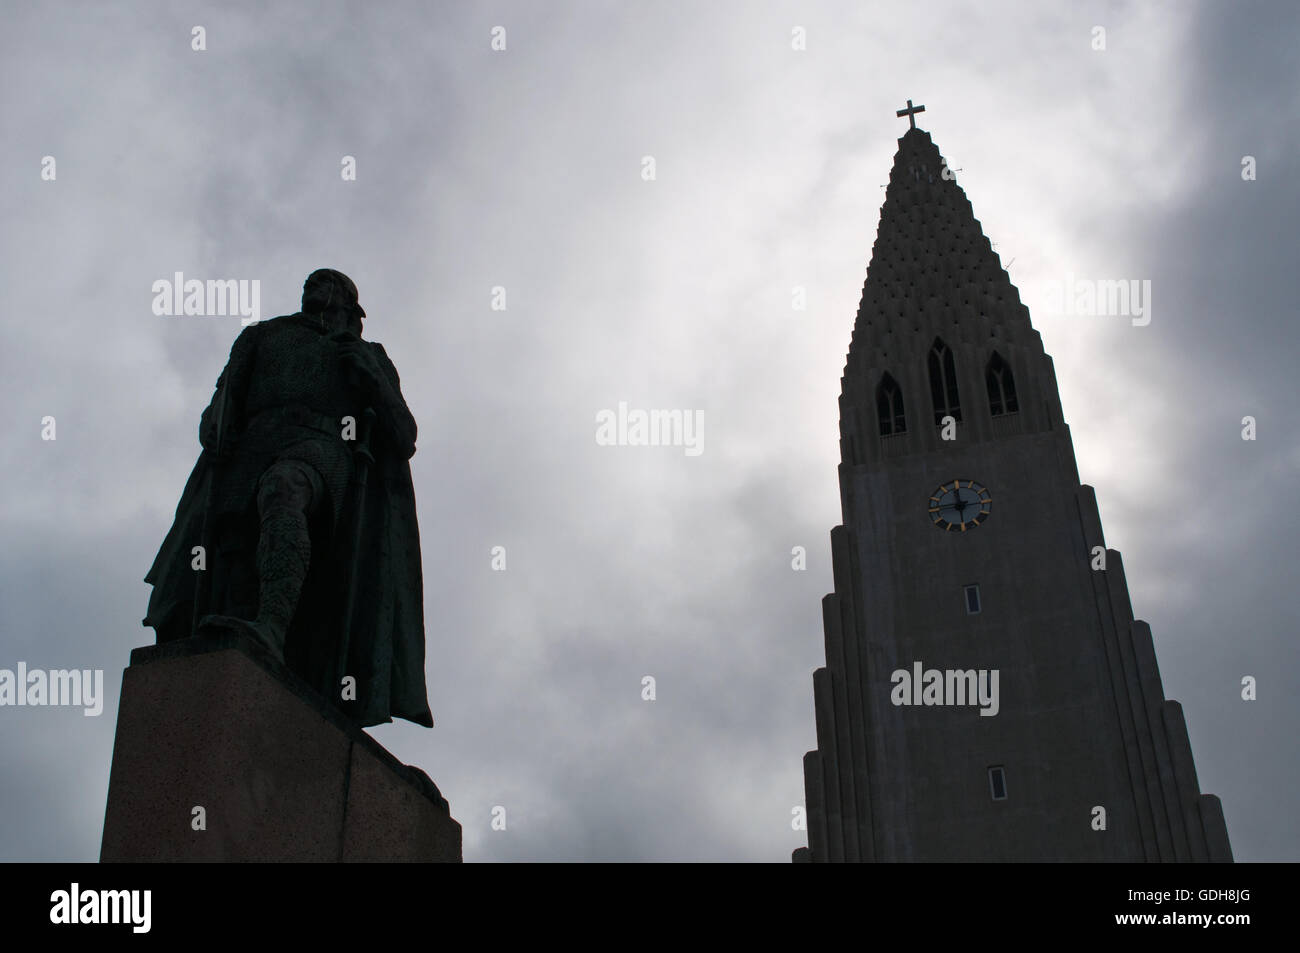 Reykjavik, Nord Europa: il Hallgrimskirkja, Luteran chiesa Hallgrimur, e la statua di explorer Leif Ericsson, due simboli della città Foto Stock